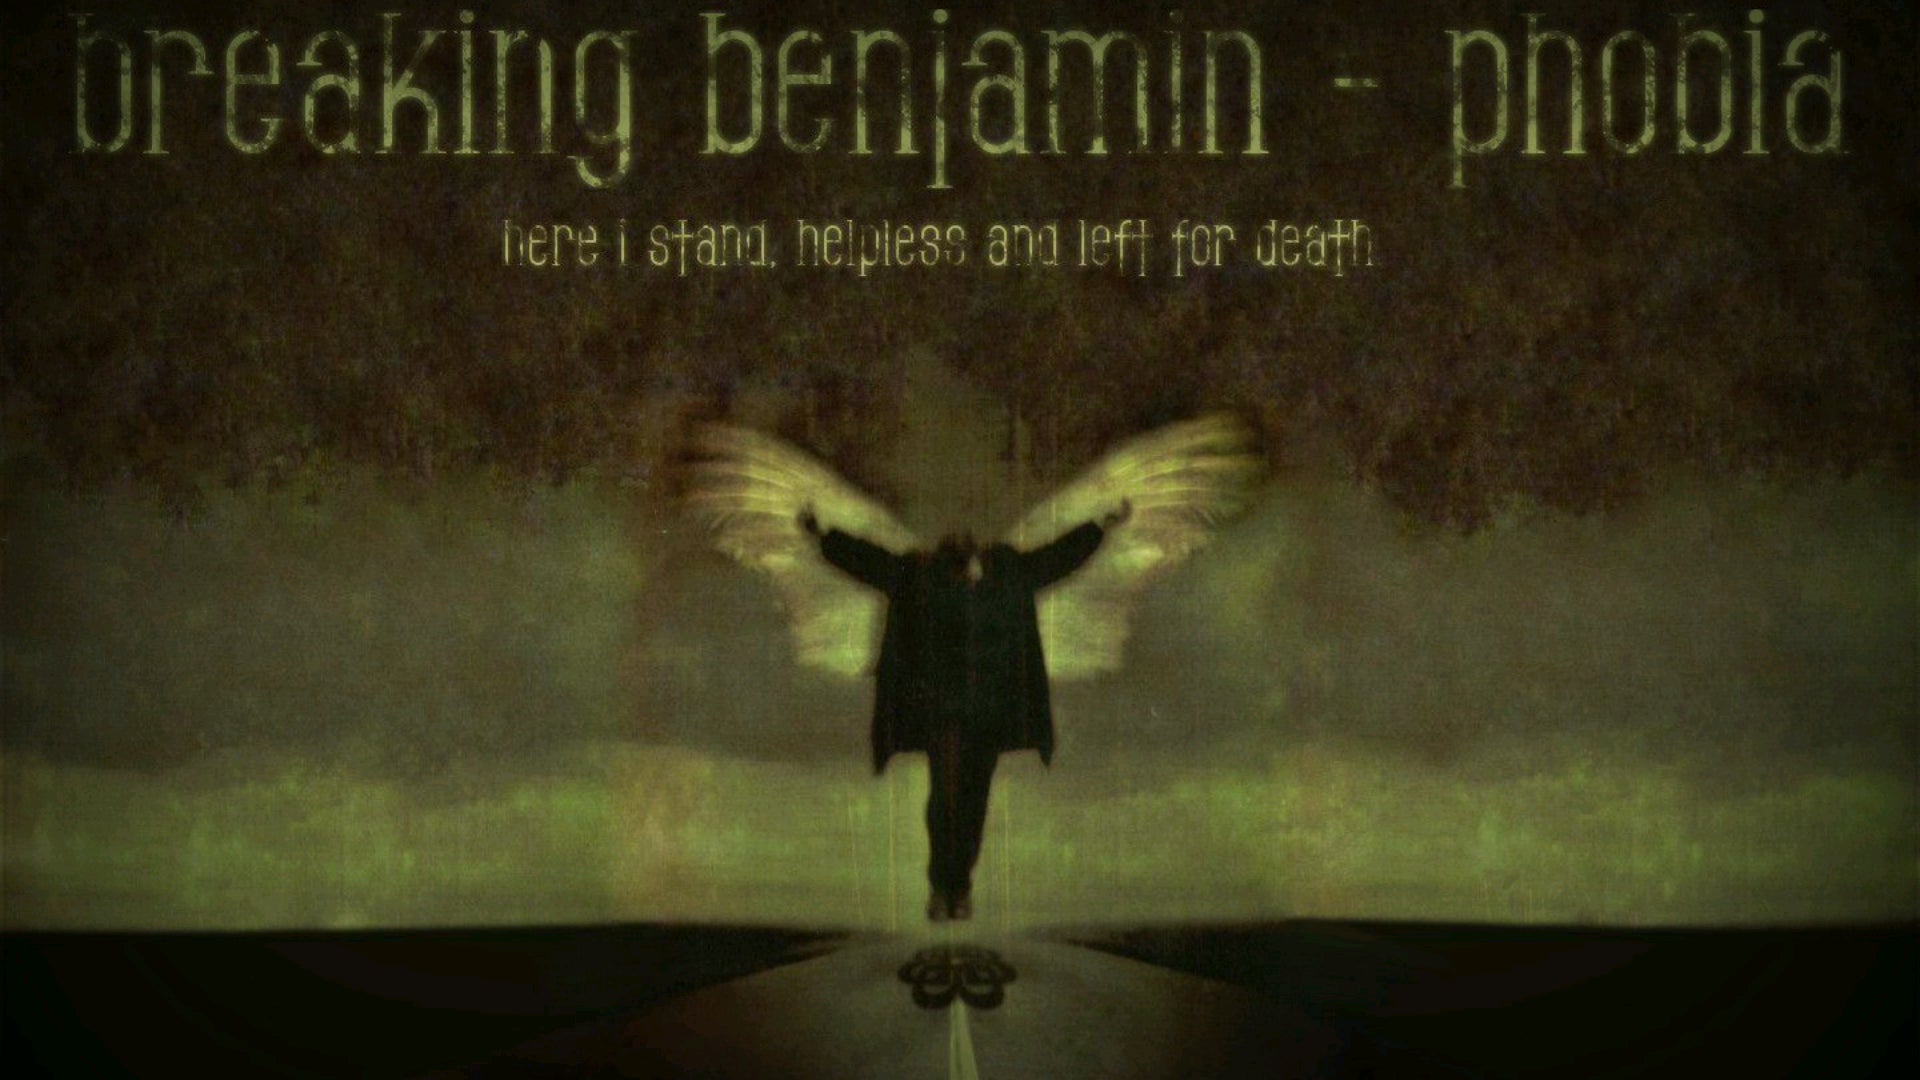 Breath   Breaking Benjamin Vocal Cover by Me rBreakingBenjamin